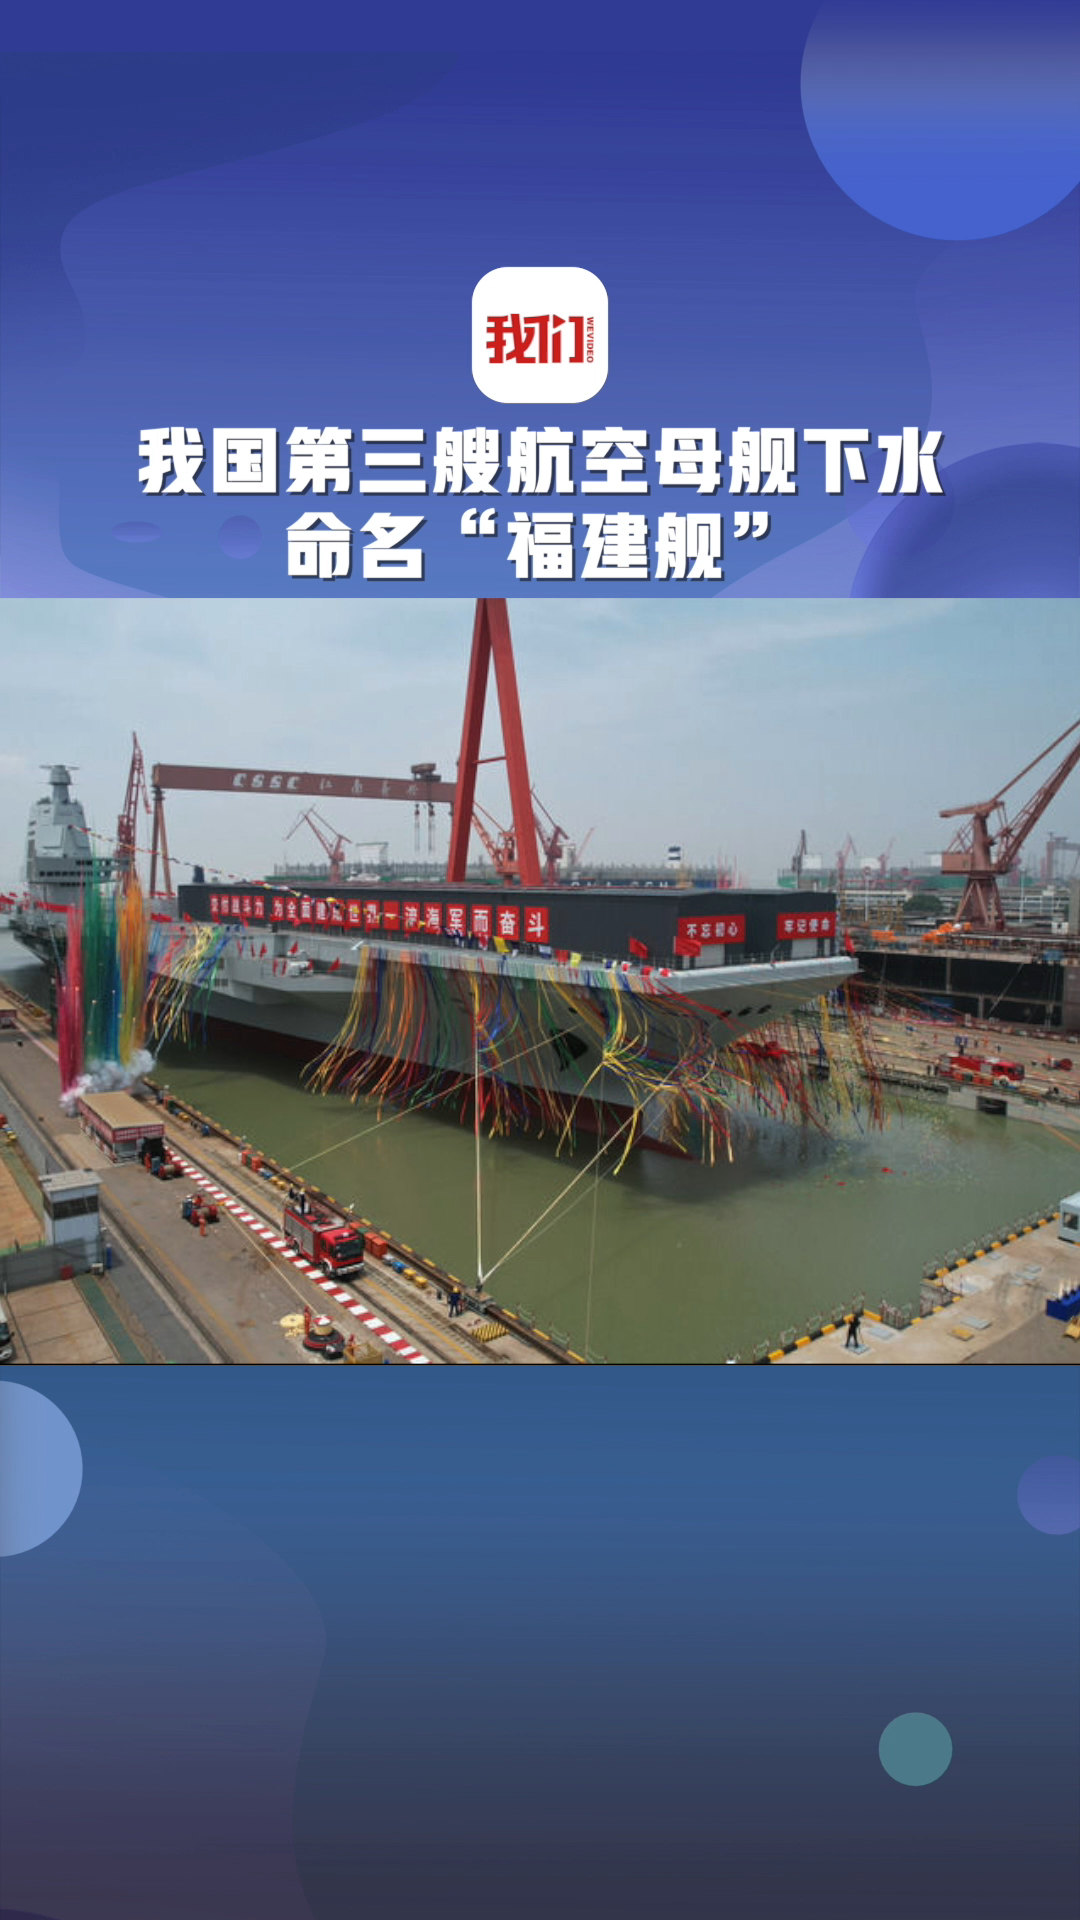 中国首艘国产航母下水图片